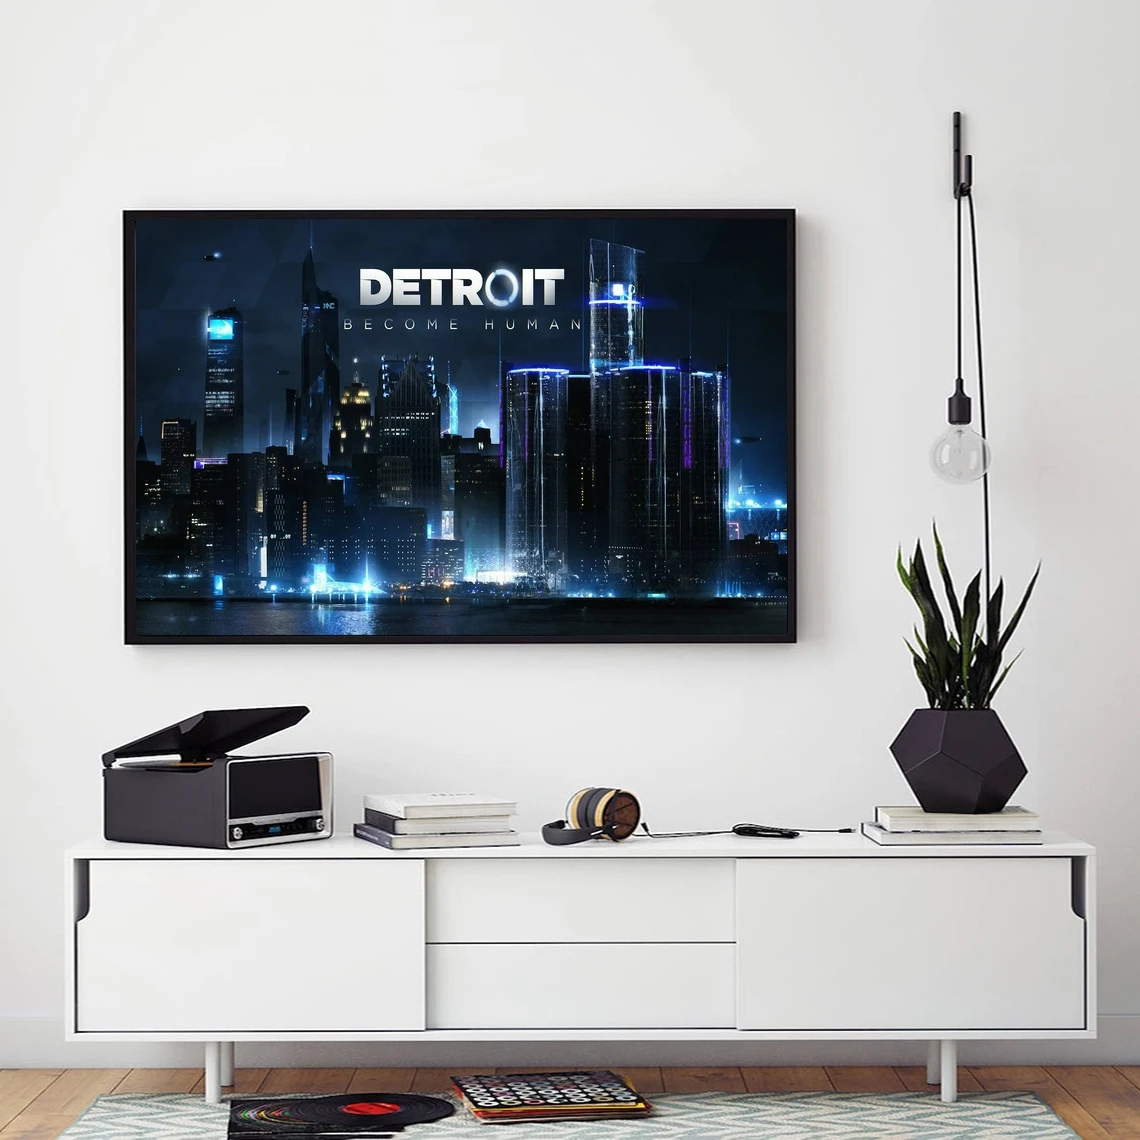 

Детройт станьте человеком 2 видео игра плакат Художественная печать холст живопись стены картины гостиная домашний Декор (без рамки)